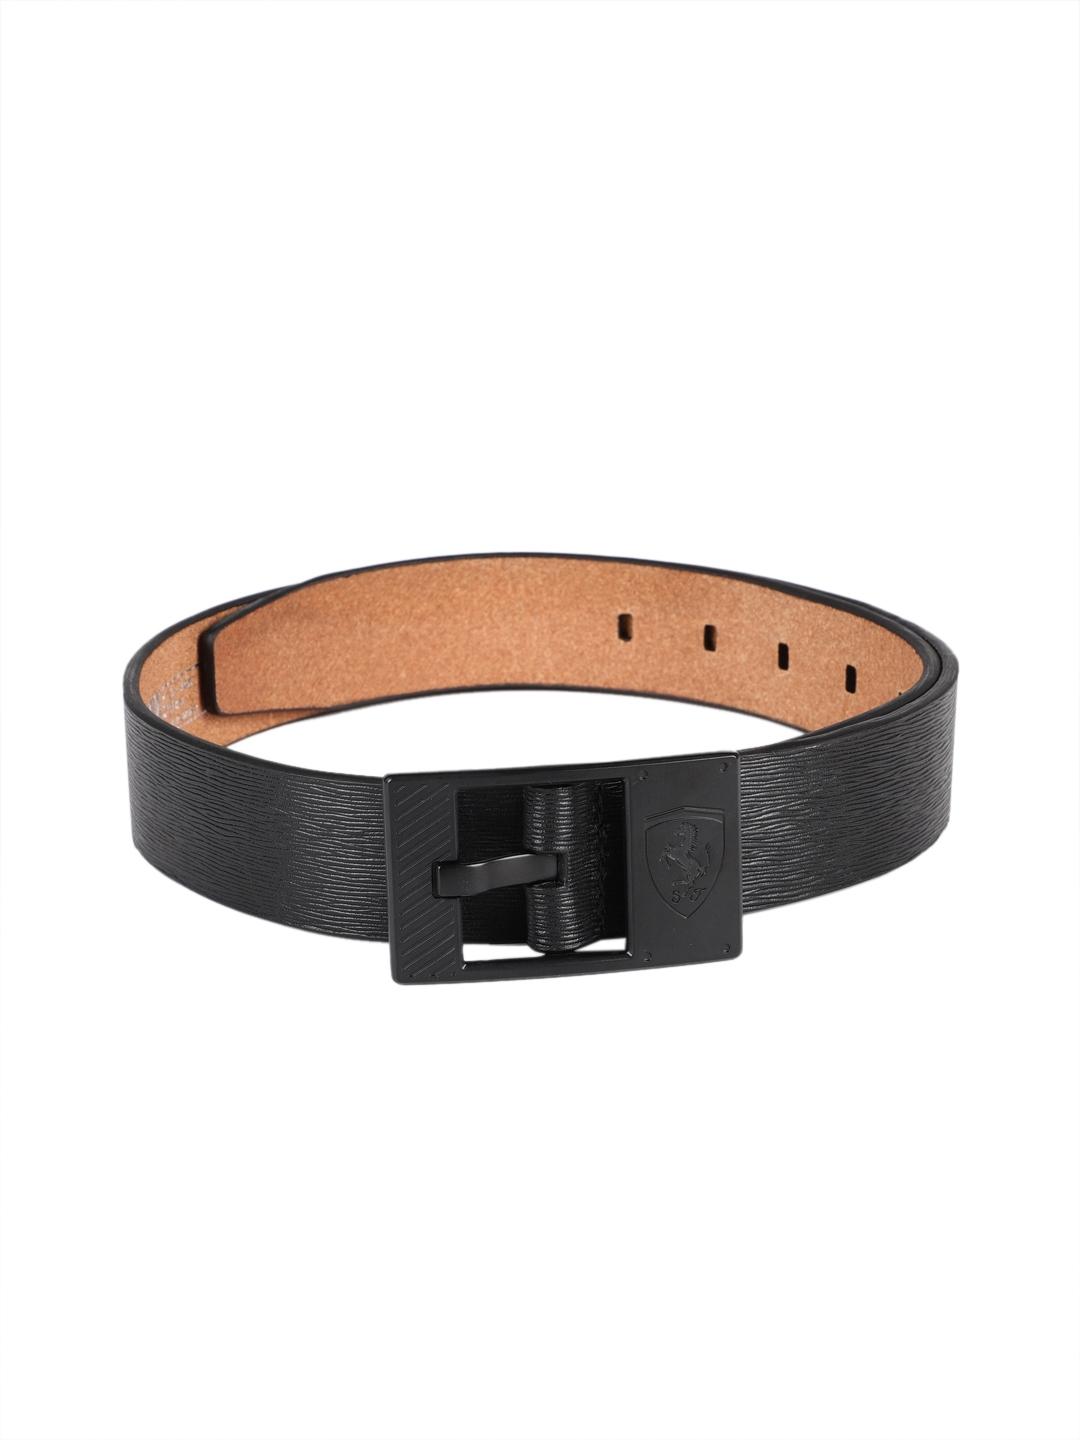 Buy Puma Men Black Textured Leather Belt - Belts for Men 6817265 | Myntra